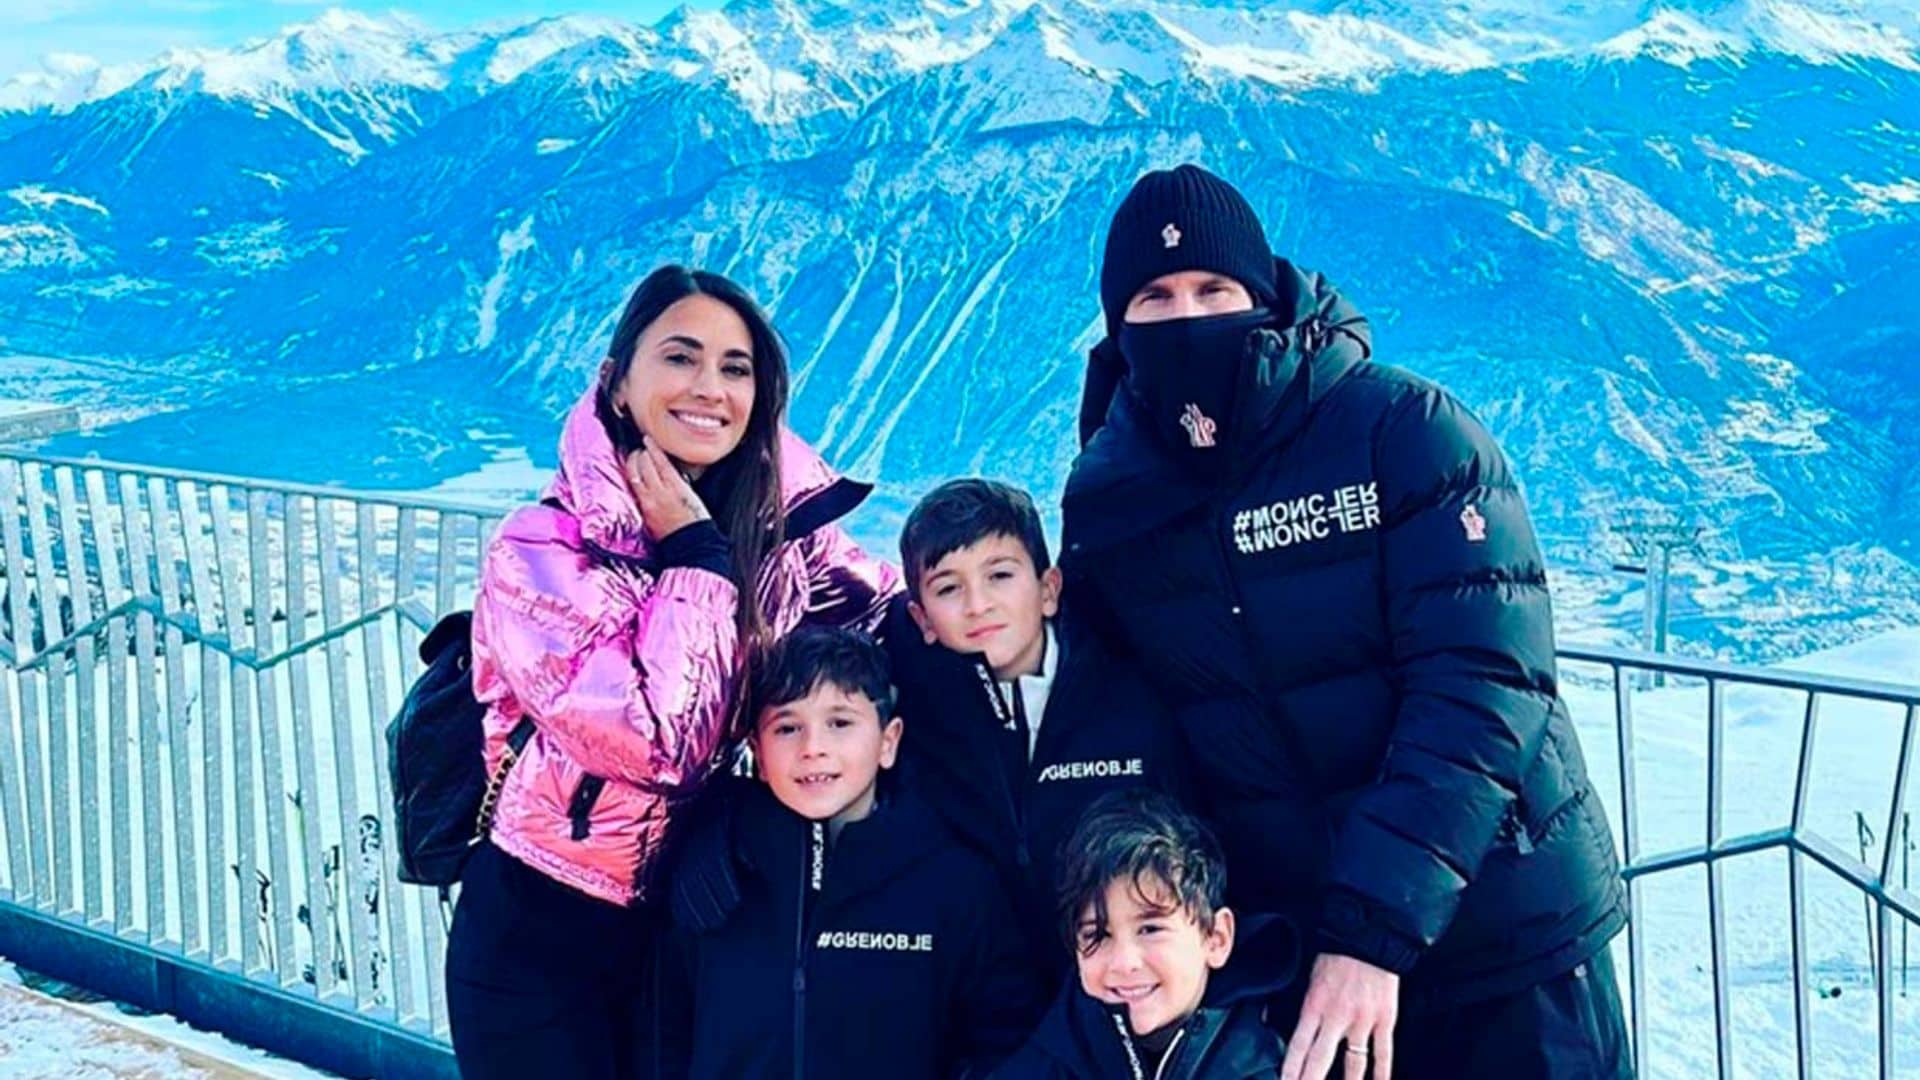 Baños en aguas calientes y esquí: la espectacular escapada de Leo Messi y Antonela Rocuzzo con sus hijos